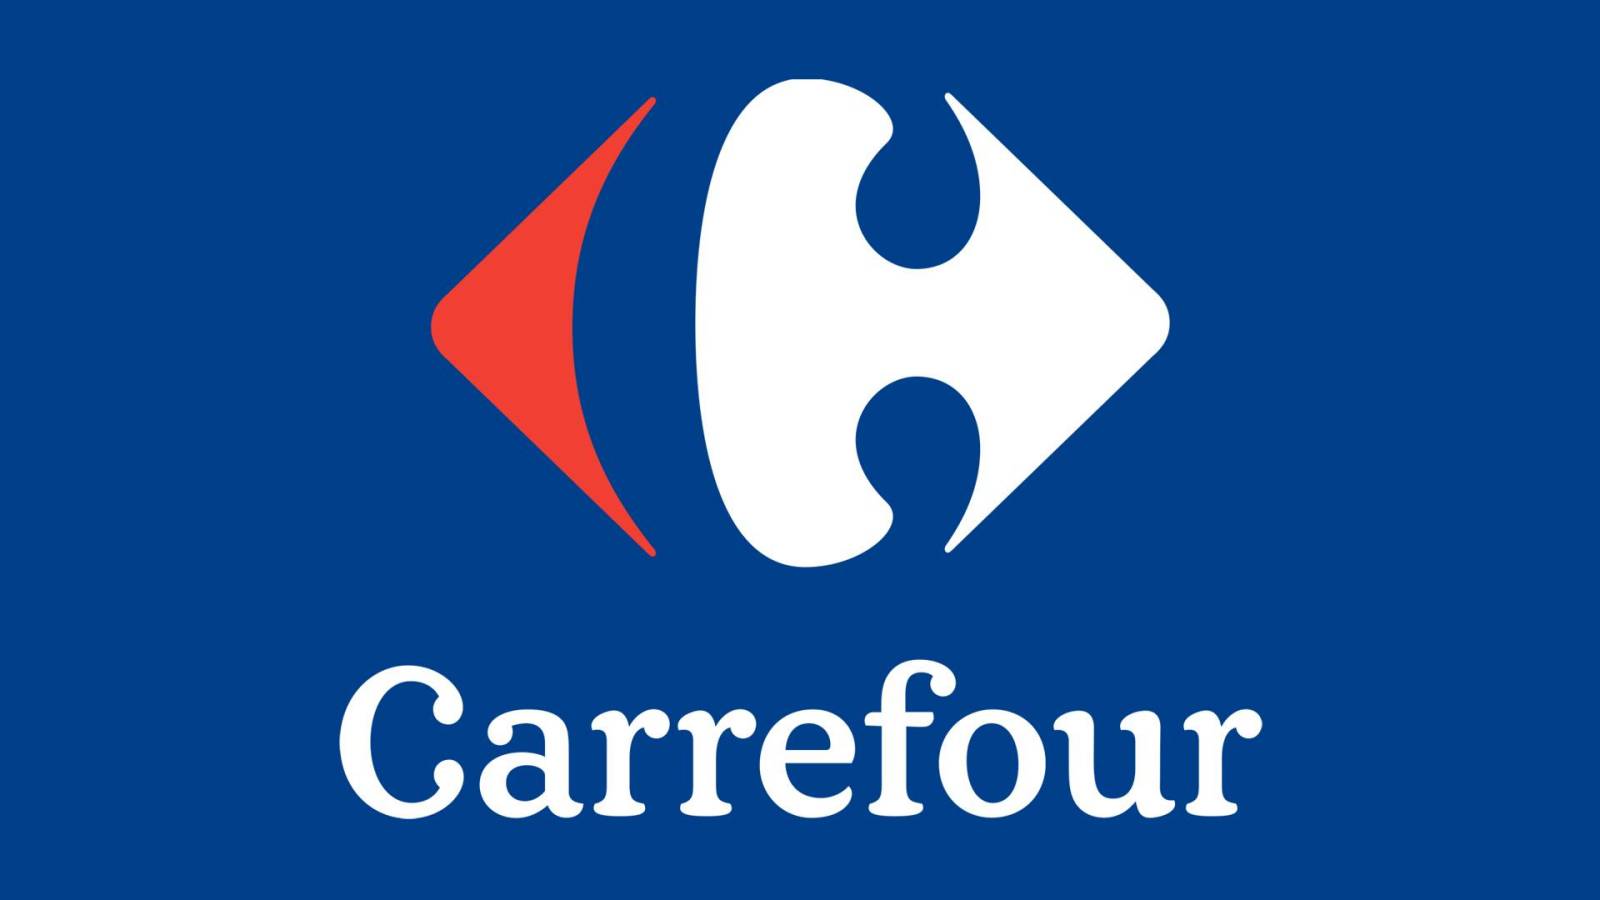 Carrefour IMPORTANTE DECISIÓN GRATUITA para los rumanos de todo el país